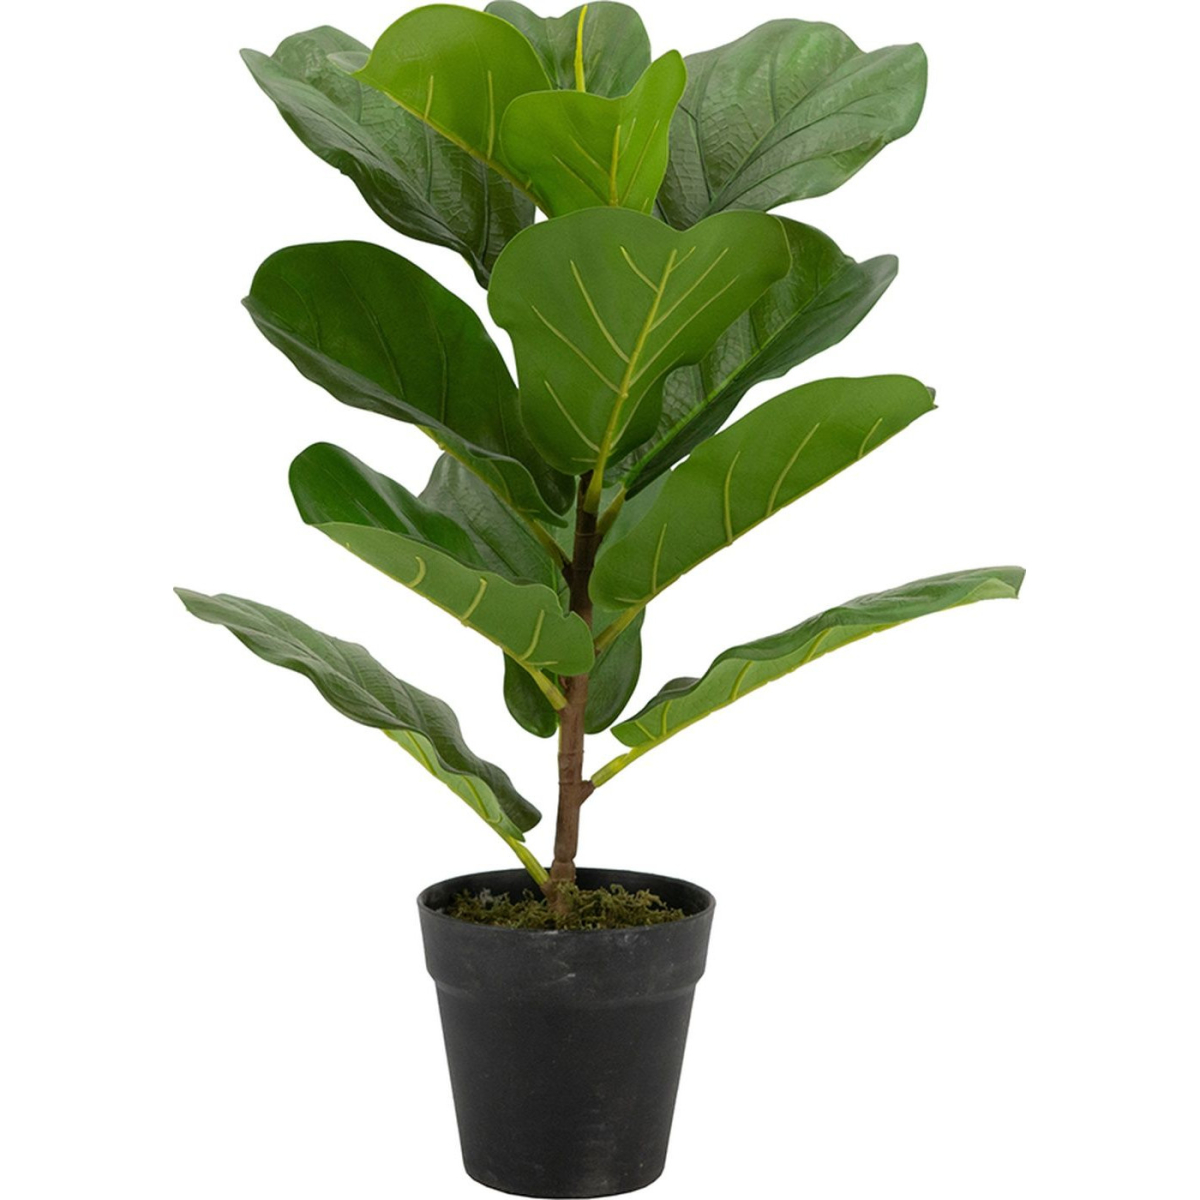 

Декоративный искусственное растение Ficus broadleaf